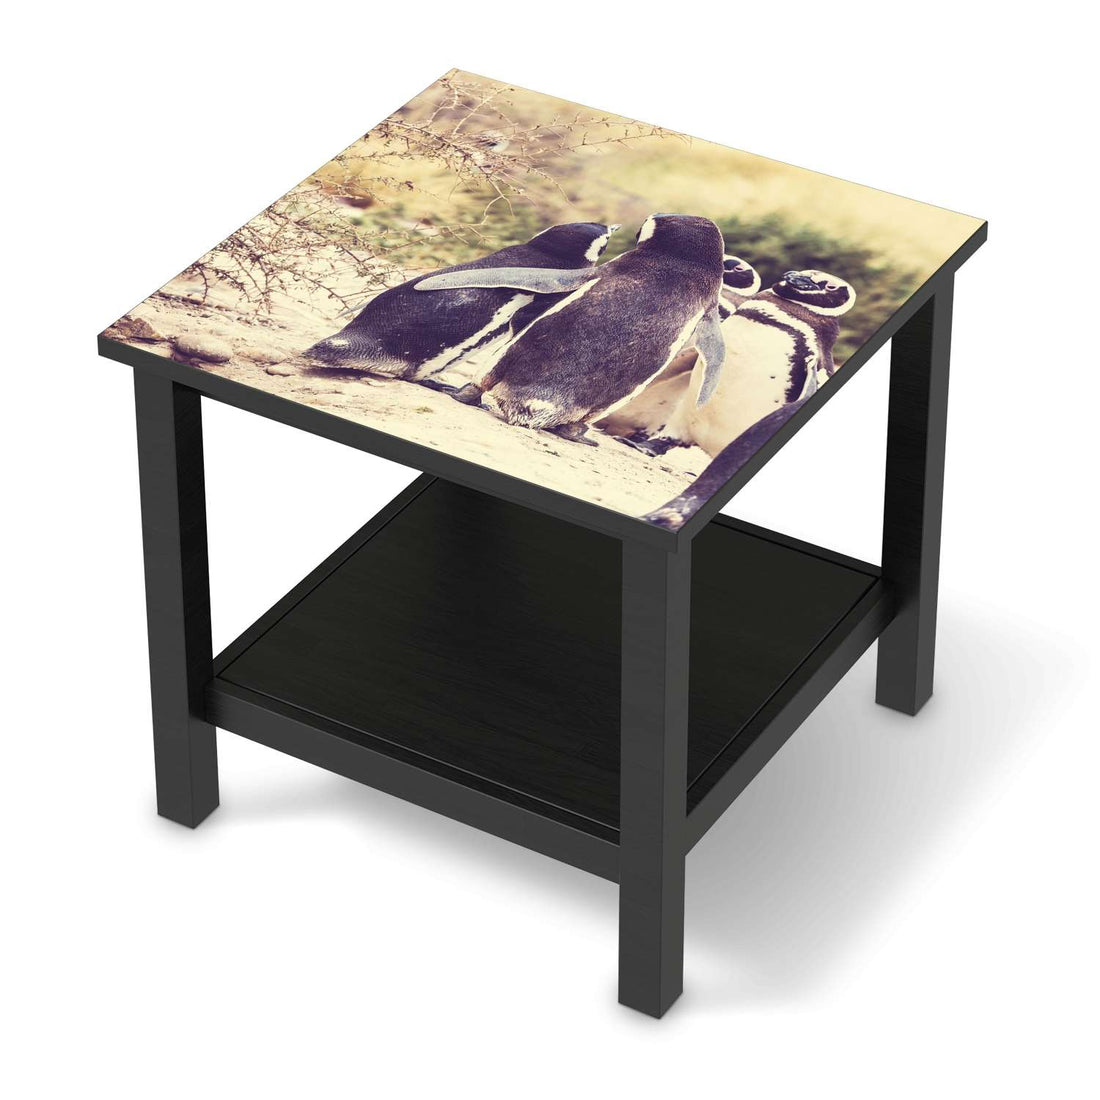 Möbel Klebefolie Pingu Friendship - IKEA Hemnes Beistelltisch 55x55 cm - schwarz